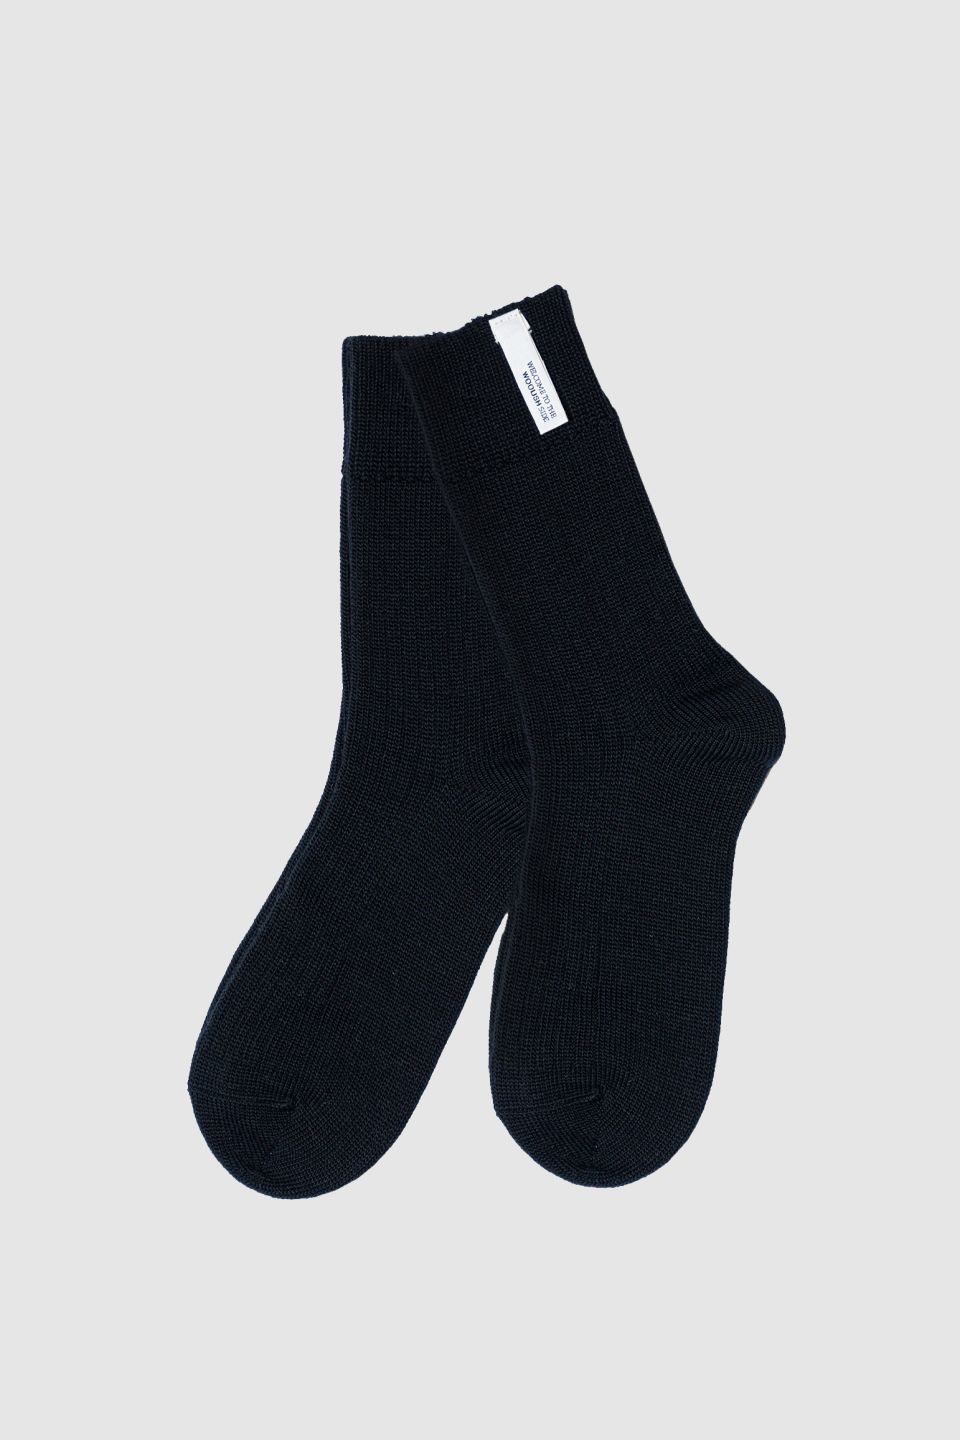 Merino socks black